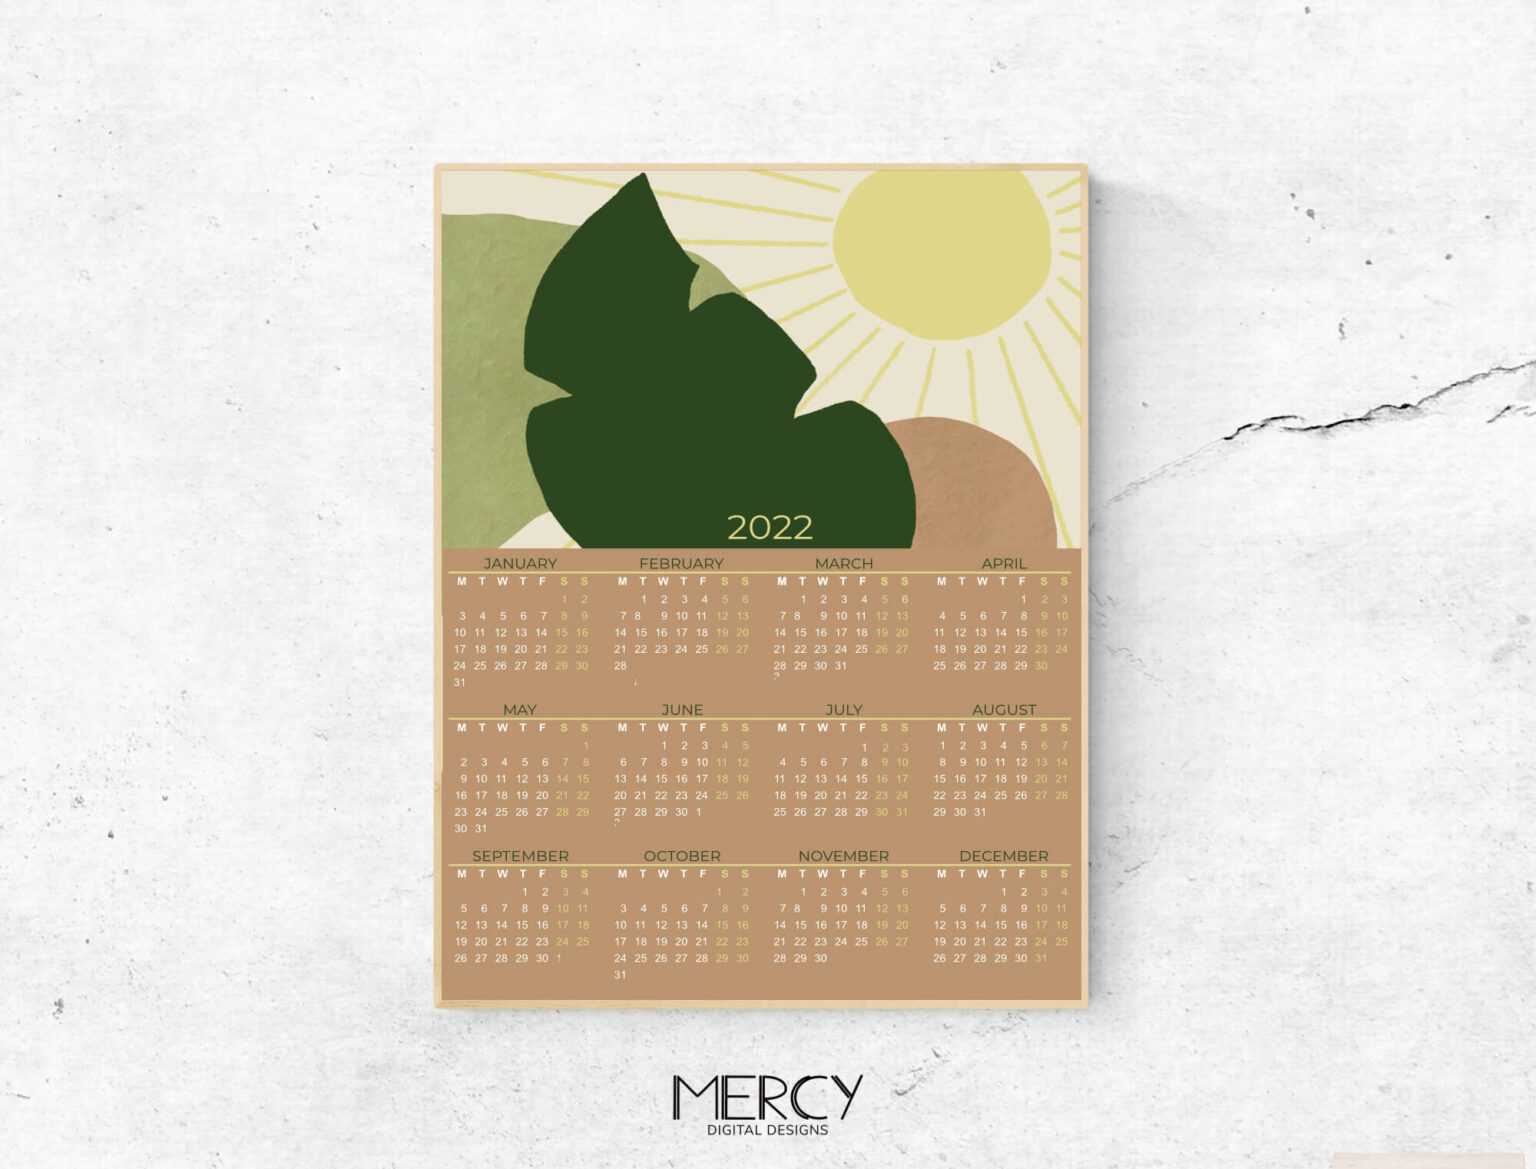 2022-calendar-printable-boho-mercy-digital-designs